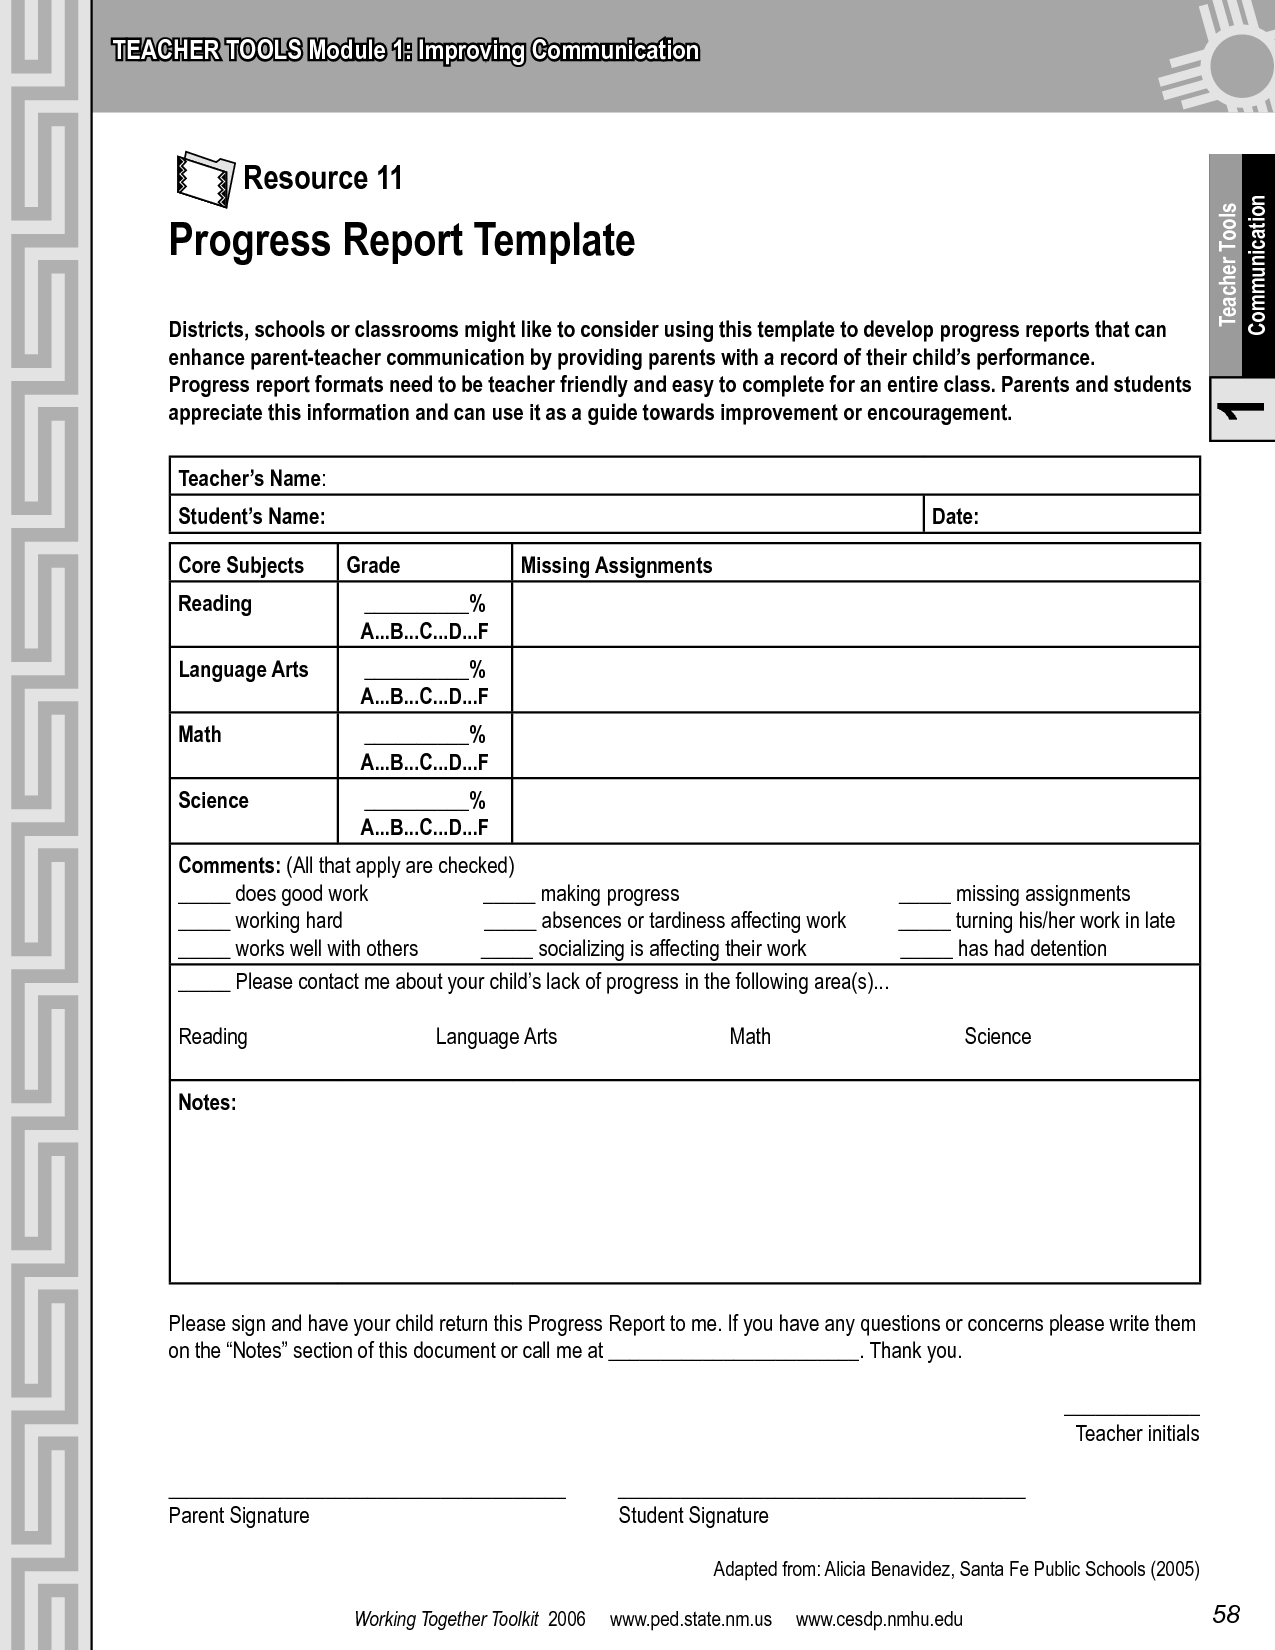 Progress Report Template | Progress Report Template - Pdf With Regard To It Progress Report Template